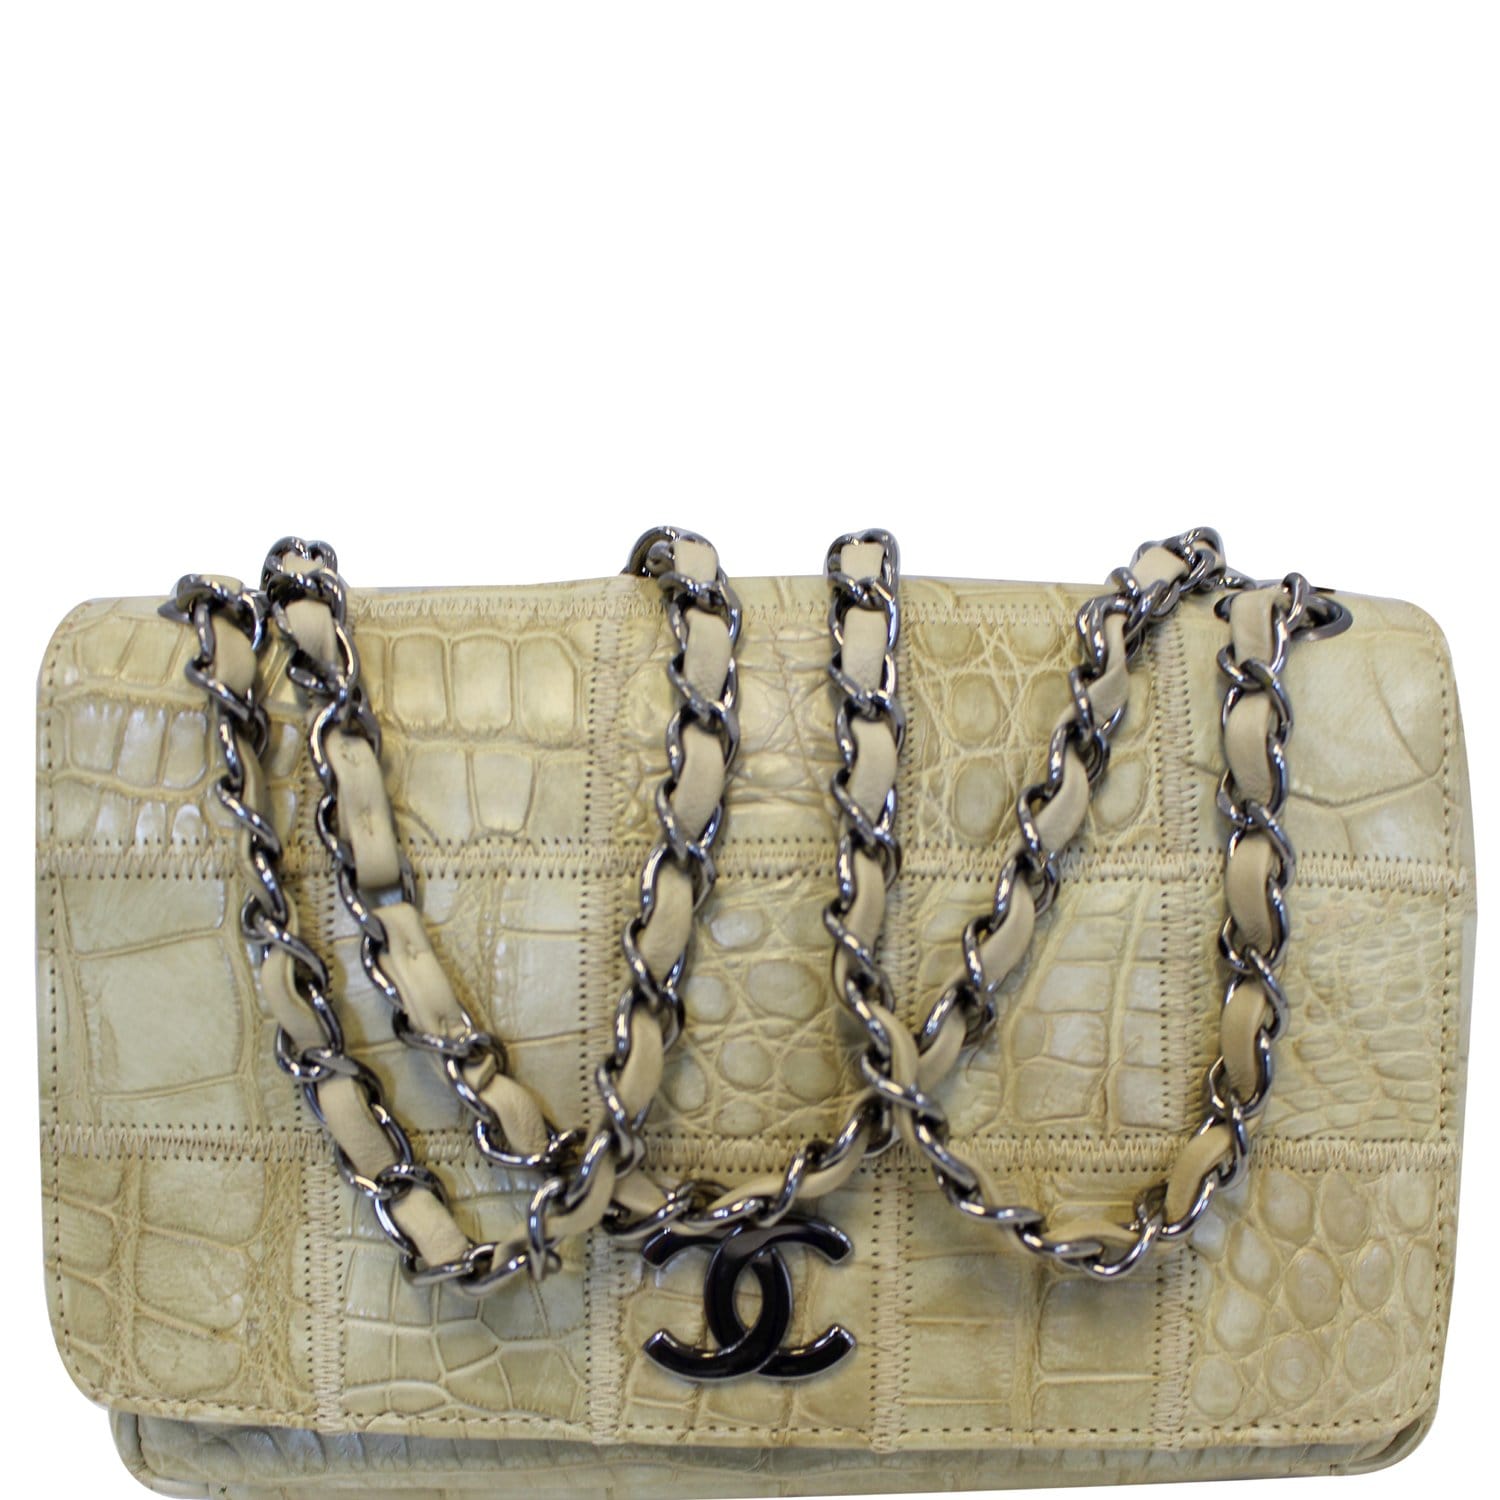 Authentic Chanel Travel Line Double Chain Flap Shoulder Bag Beige